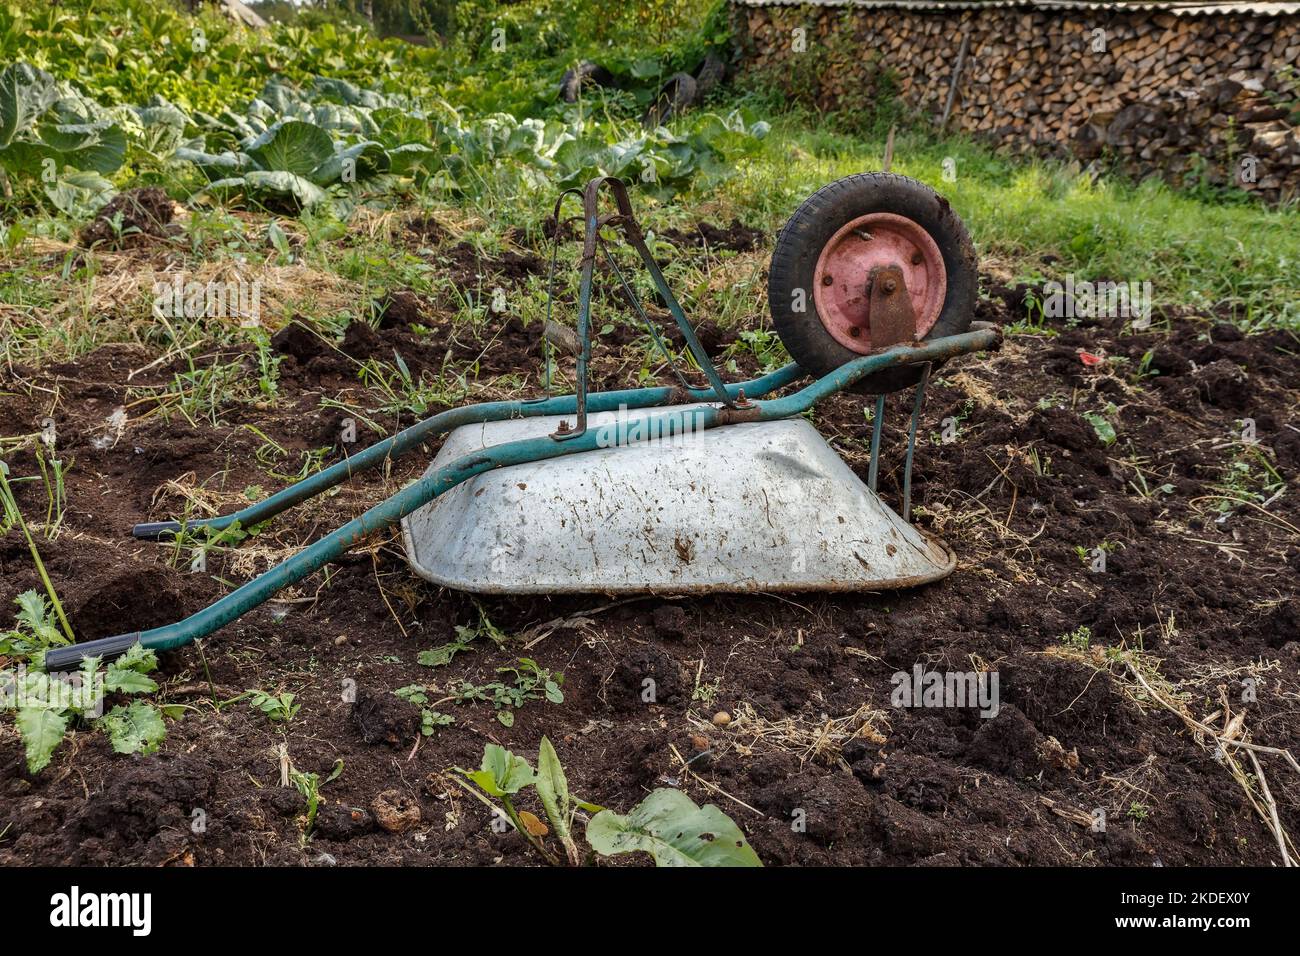 overturned wheelbarrow in the garden. wheelbarrow lying on the ground. Wheel on top. Stock Photo